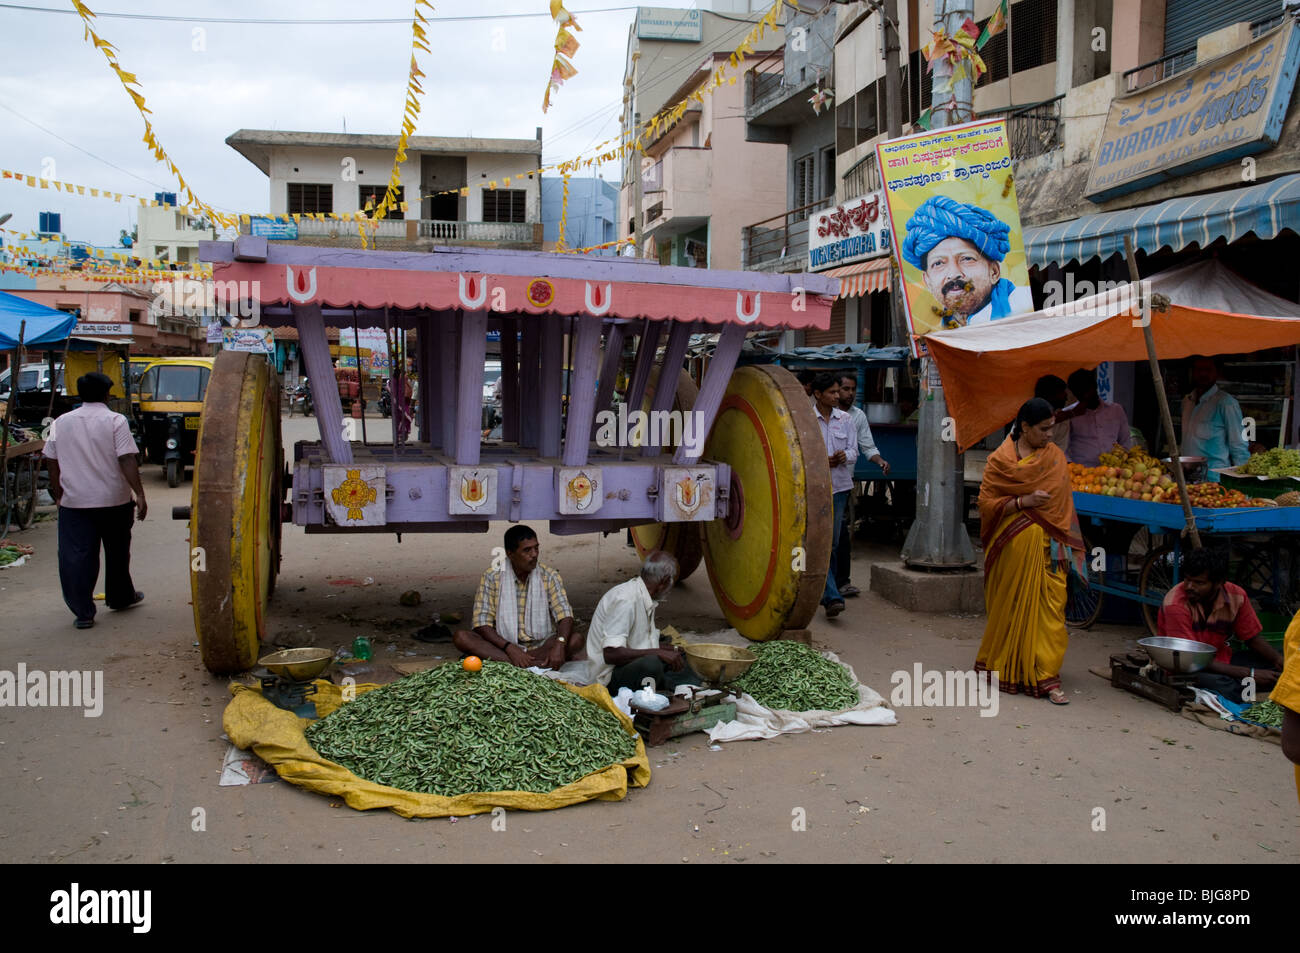 Market place in Bangalore, Karnataka, India Stock Photo